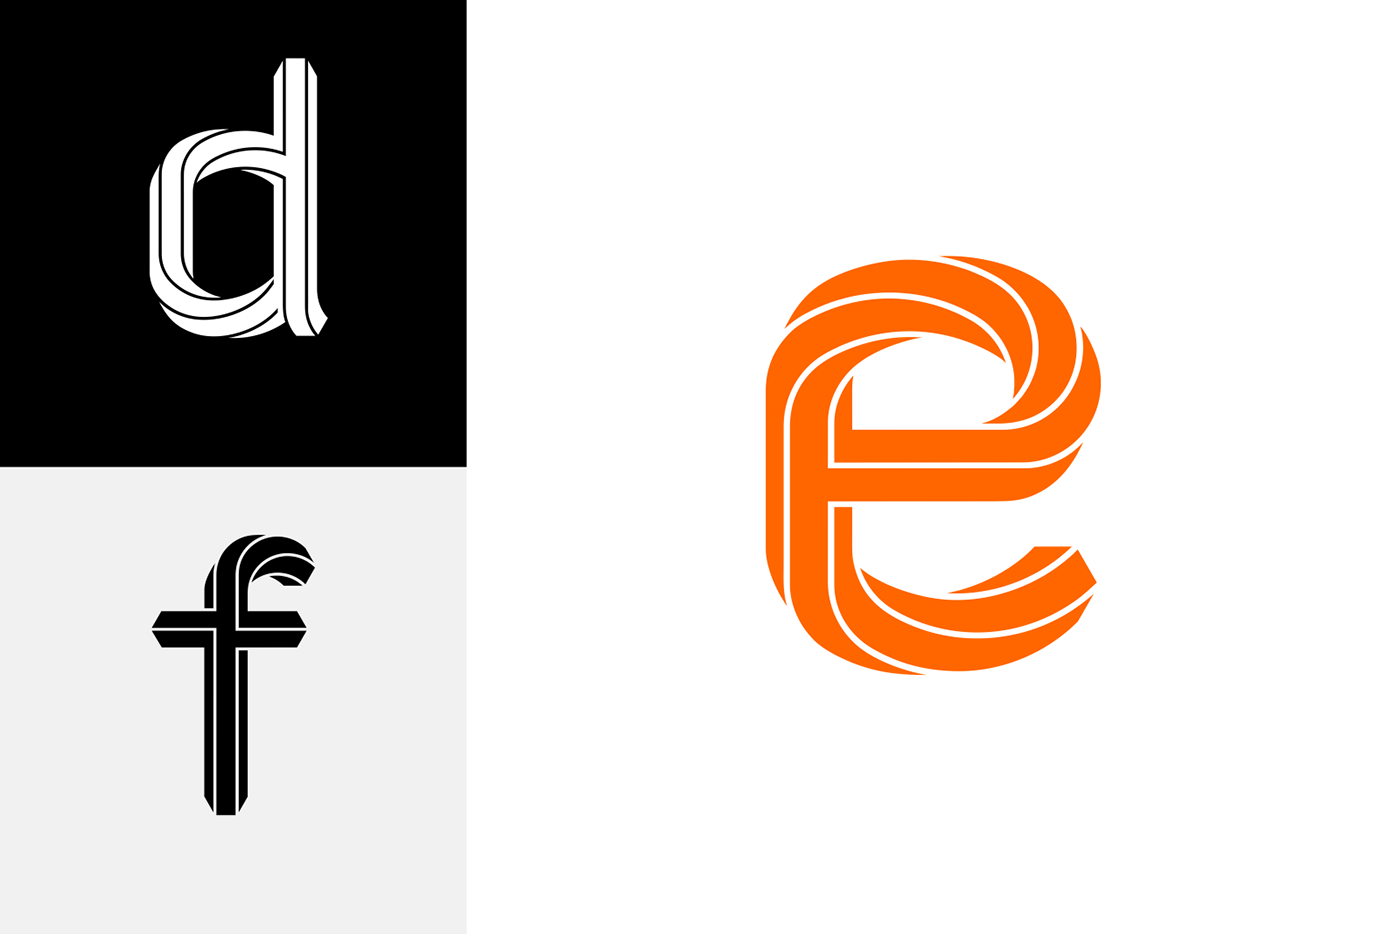 36days_08 36days_adobe 36daysoftype design lettering letterlogo monogram shiftogram typedesign typography  